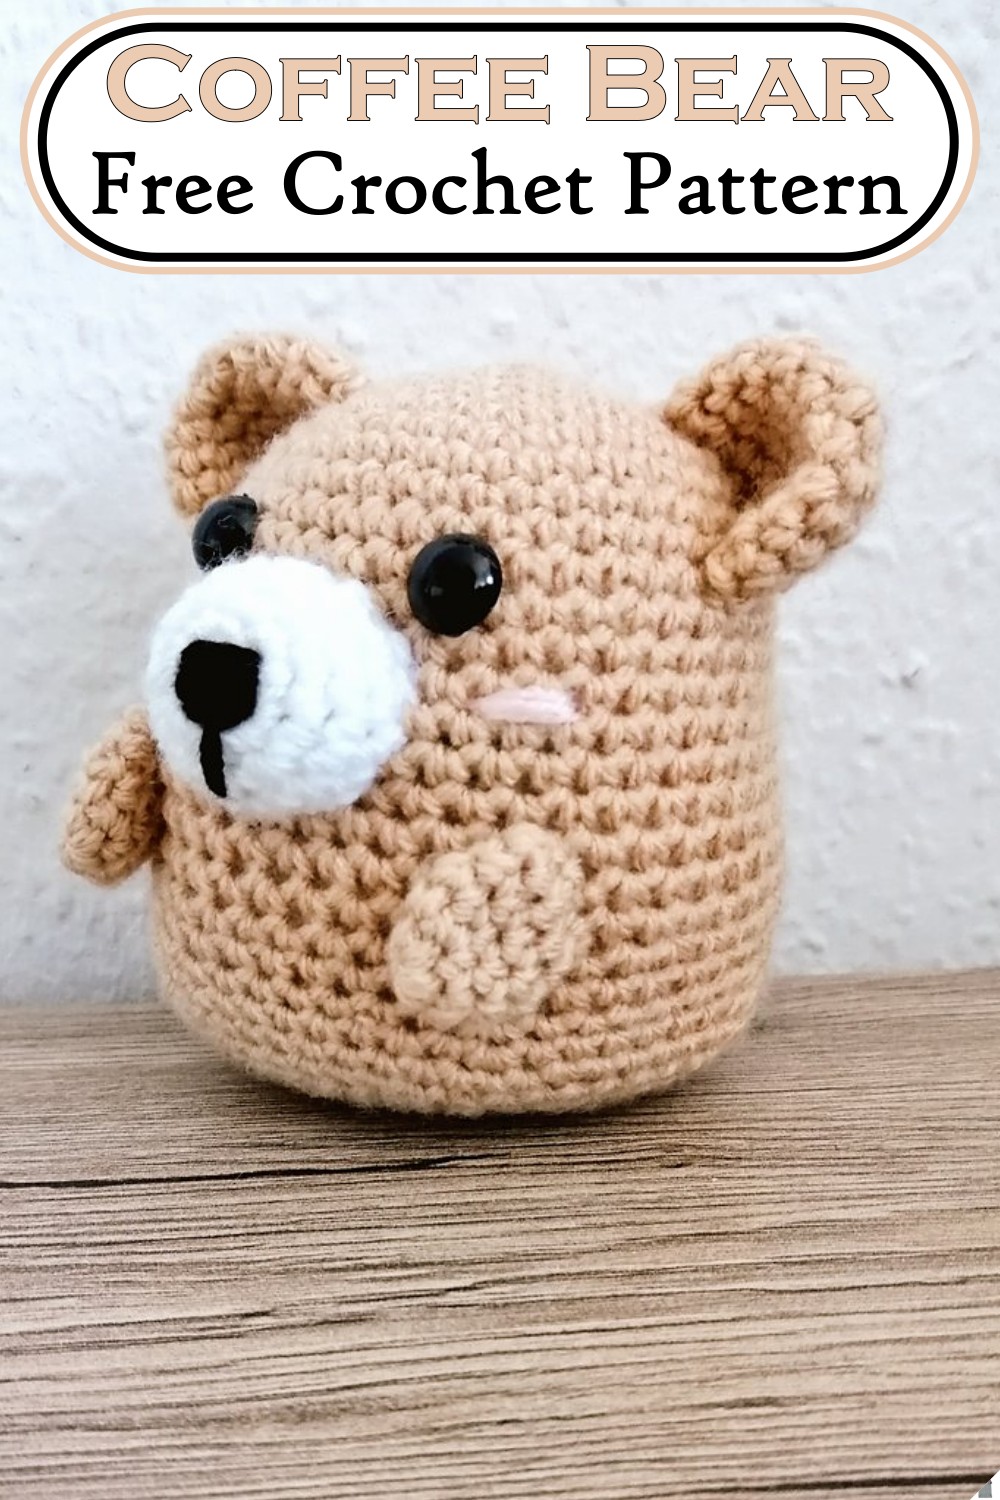 Free Crochet Bear Pattern